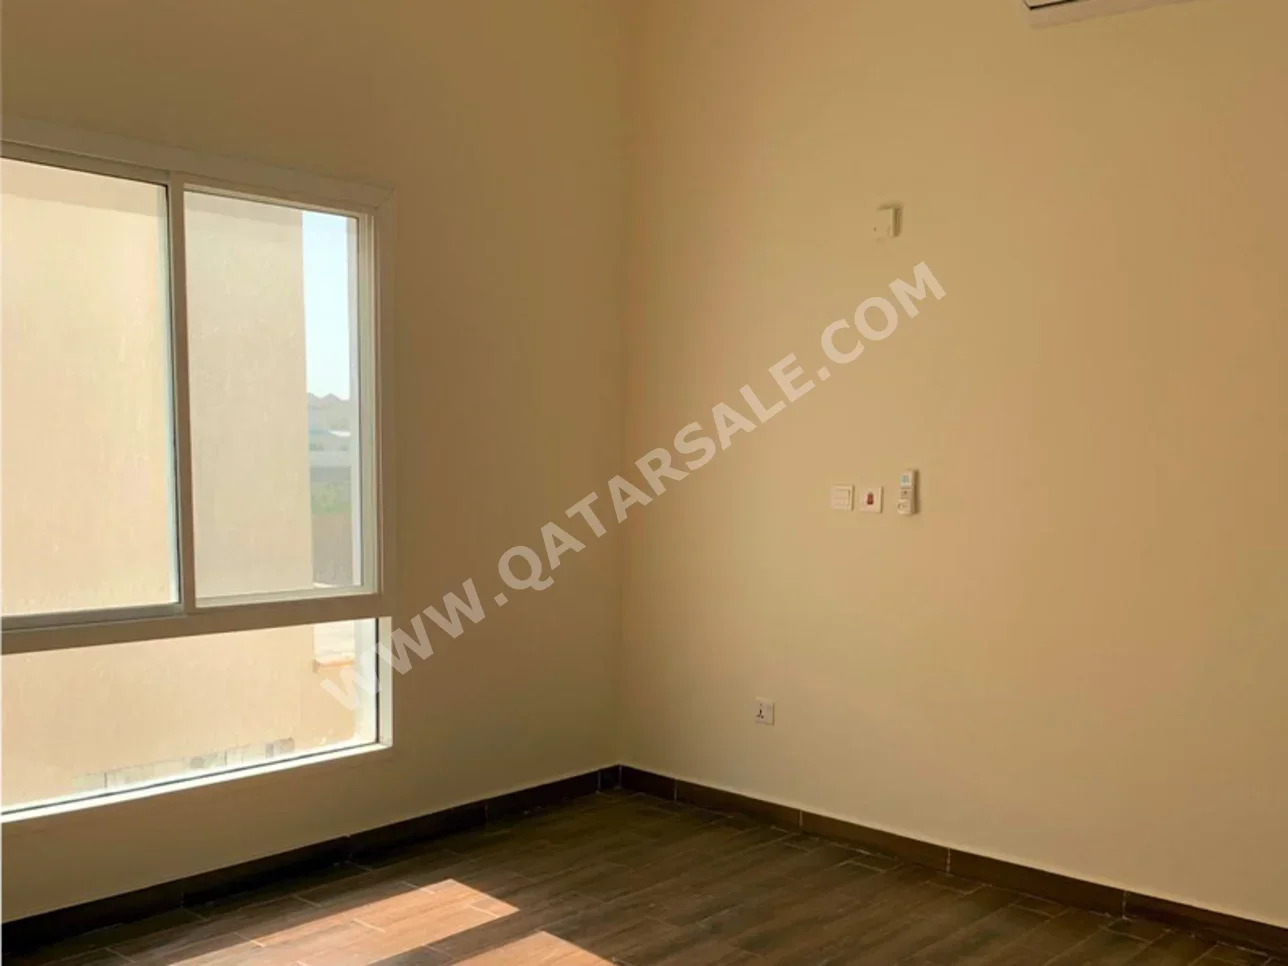 3 Bedrooms  Apartment  For Rent  in Umm Salal -  Umm Salal Ali  Not Furnished